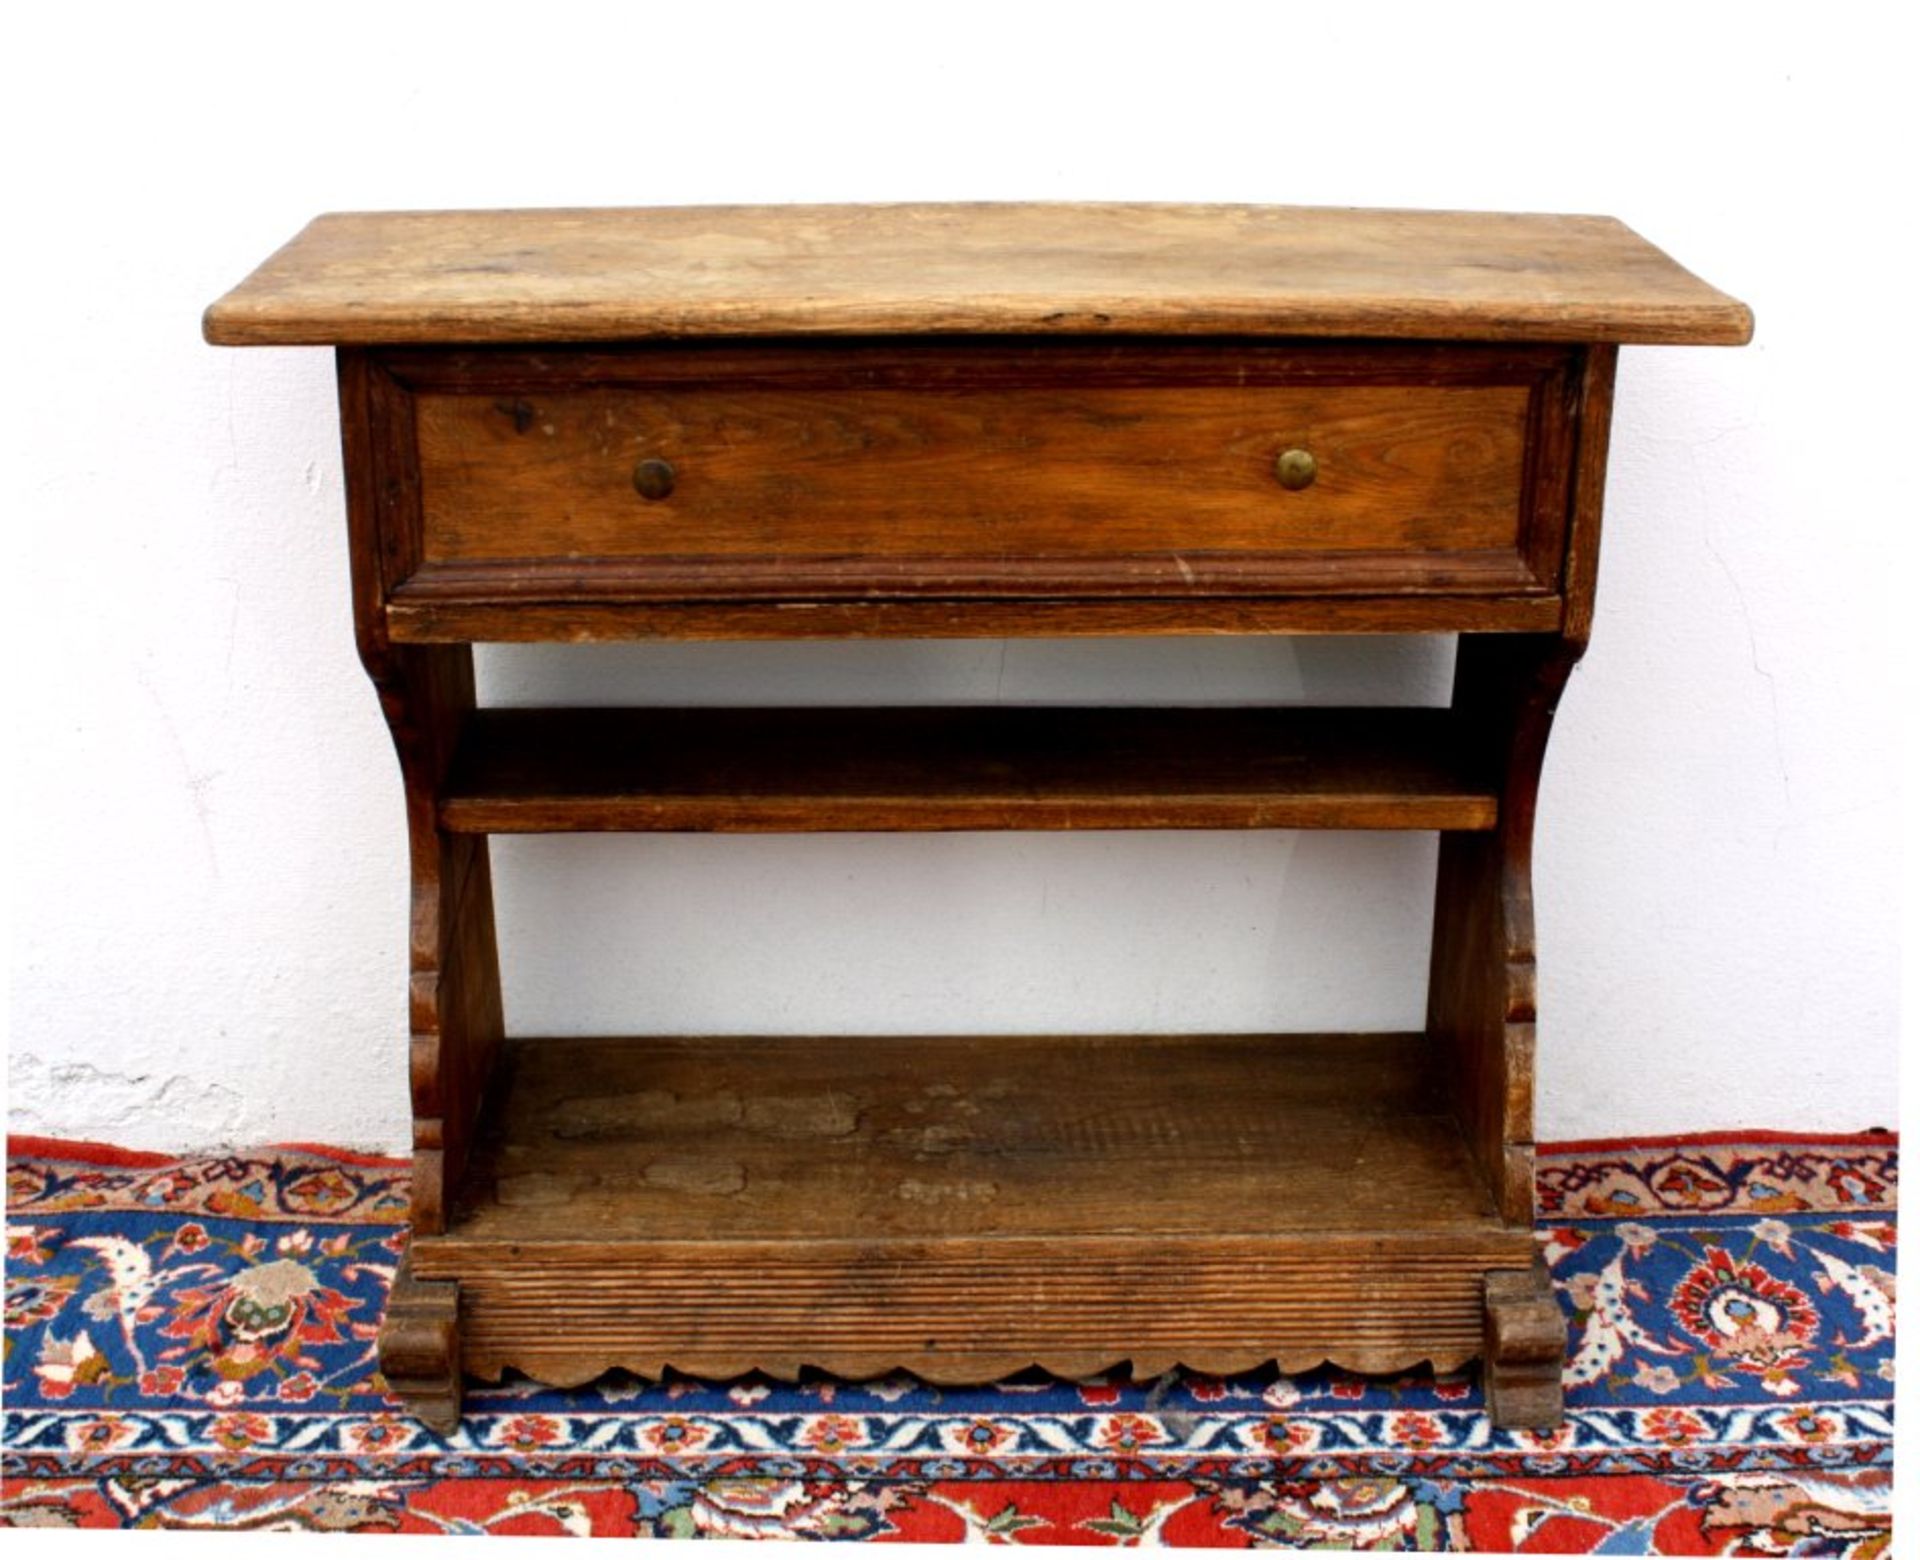 Kleiner Holztisch 19. Jh.mit 1 Schublade und Zwischenablage, Eiche massiv.ca.67x79x28 cm.